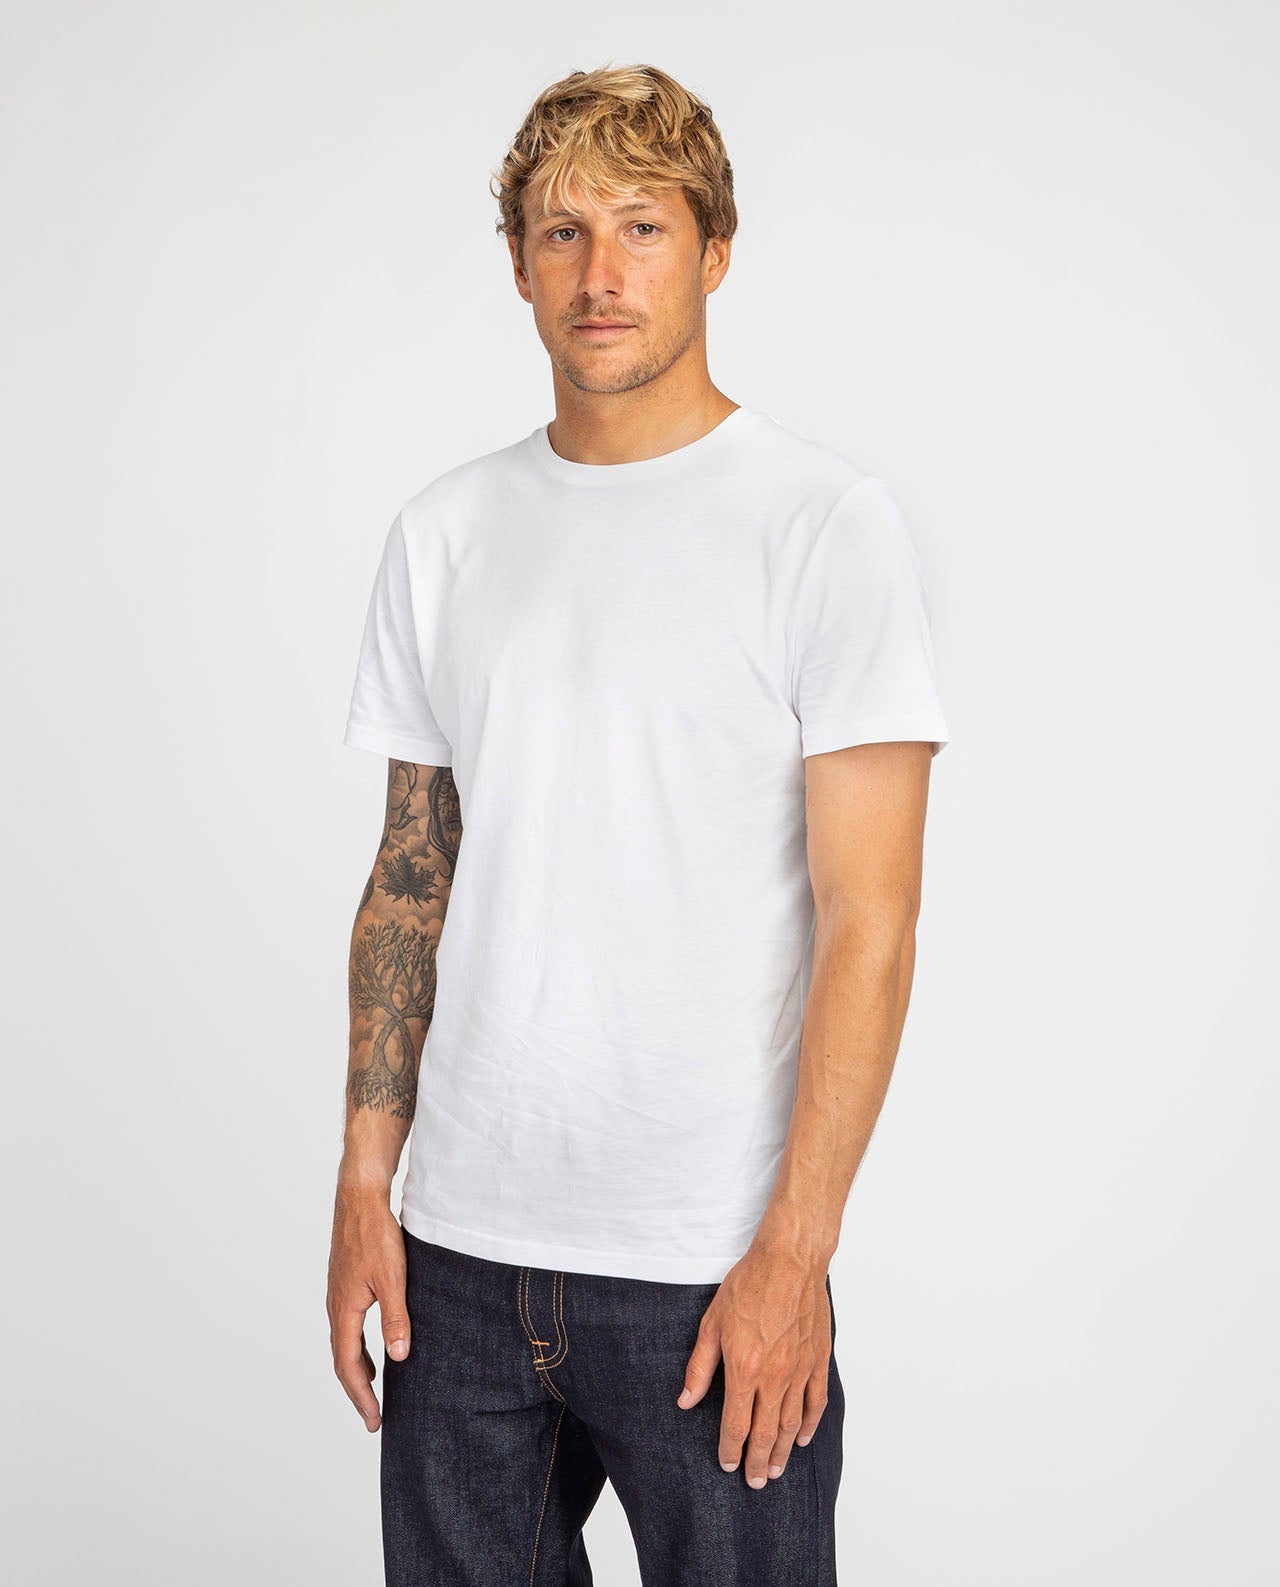 marché commun organic basics t-shirt homme manches courtes coton biologique basique éco-responsable éthique blanc